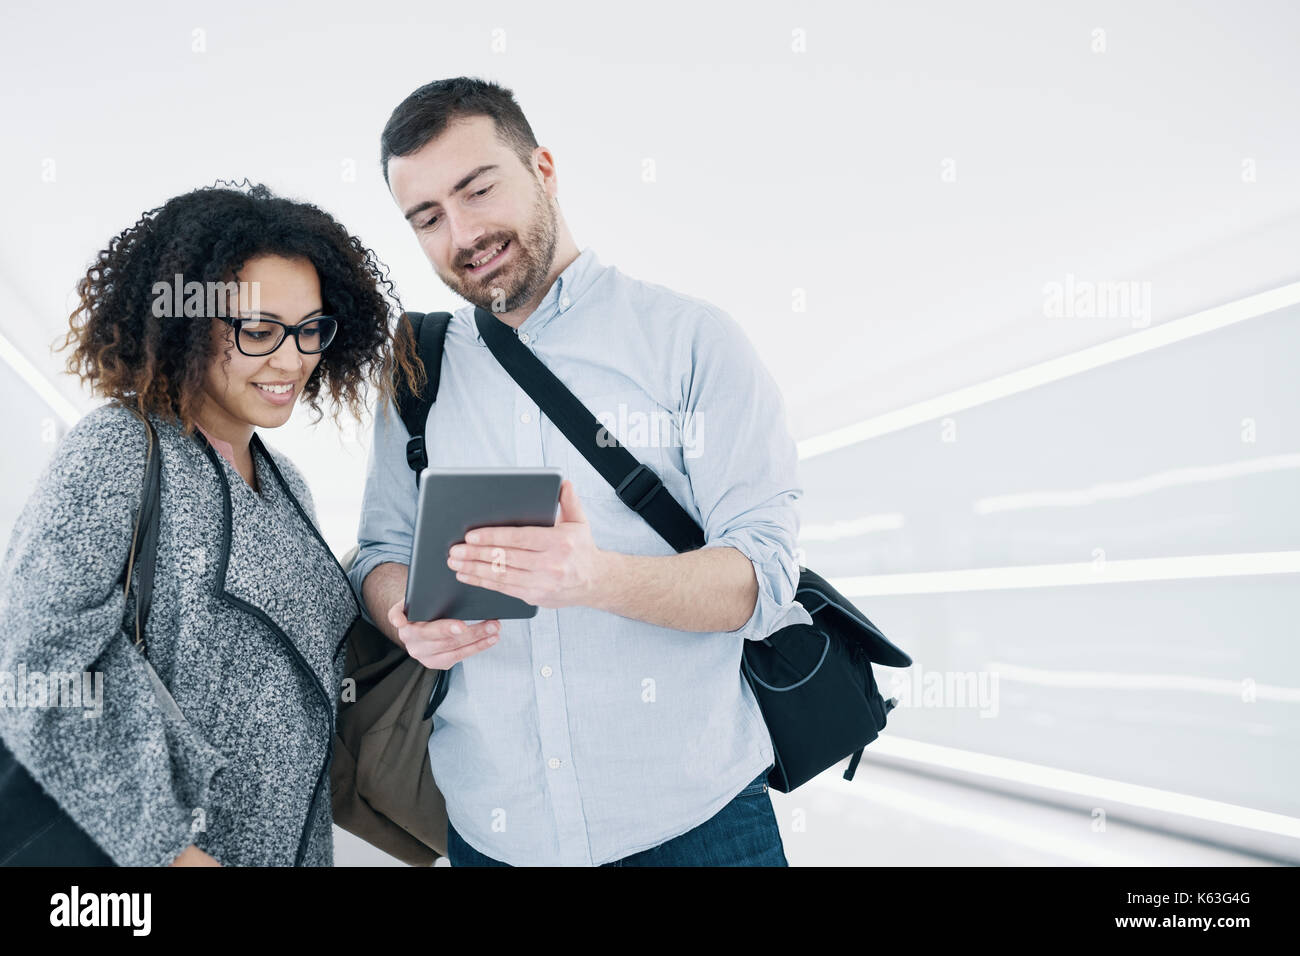 Paar im Urlaub mit Reise-app auf digitale Tablet startbereit Stockfoto